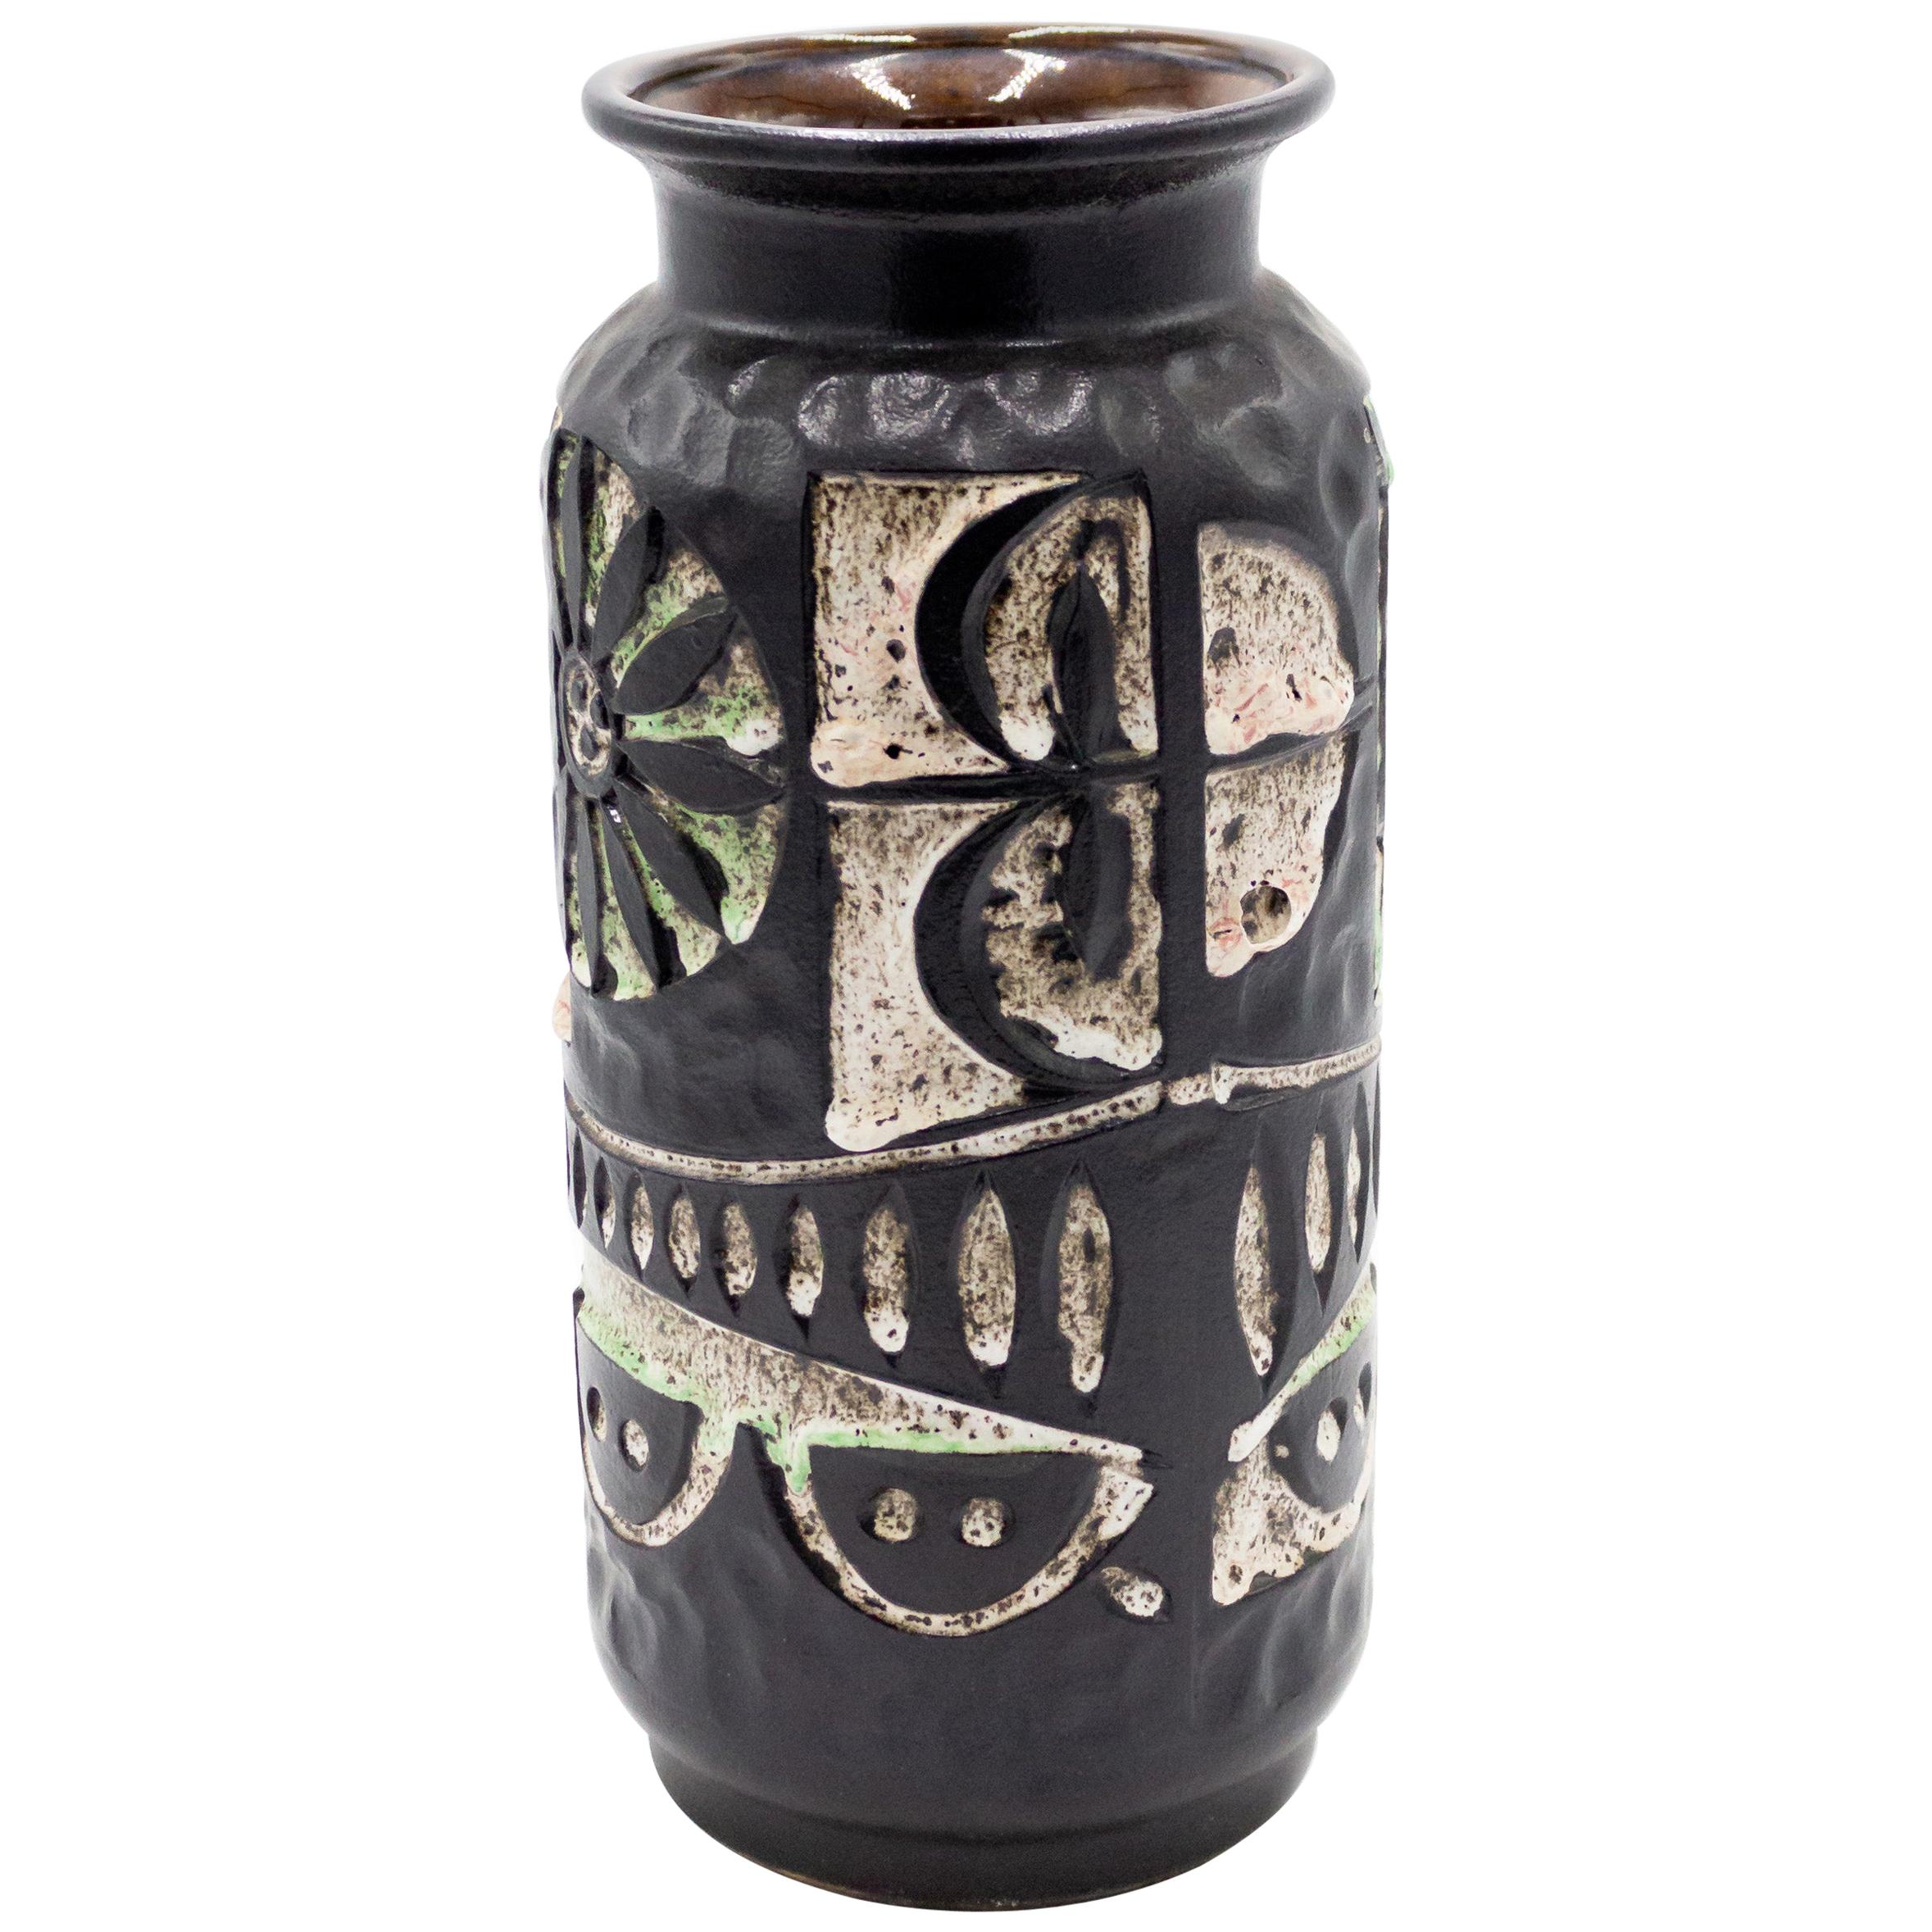 Modernist Black and White Ceramic Vase